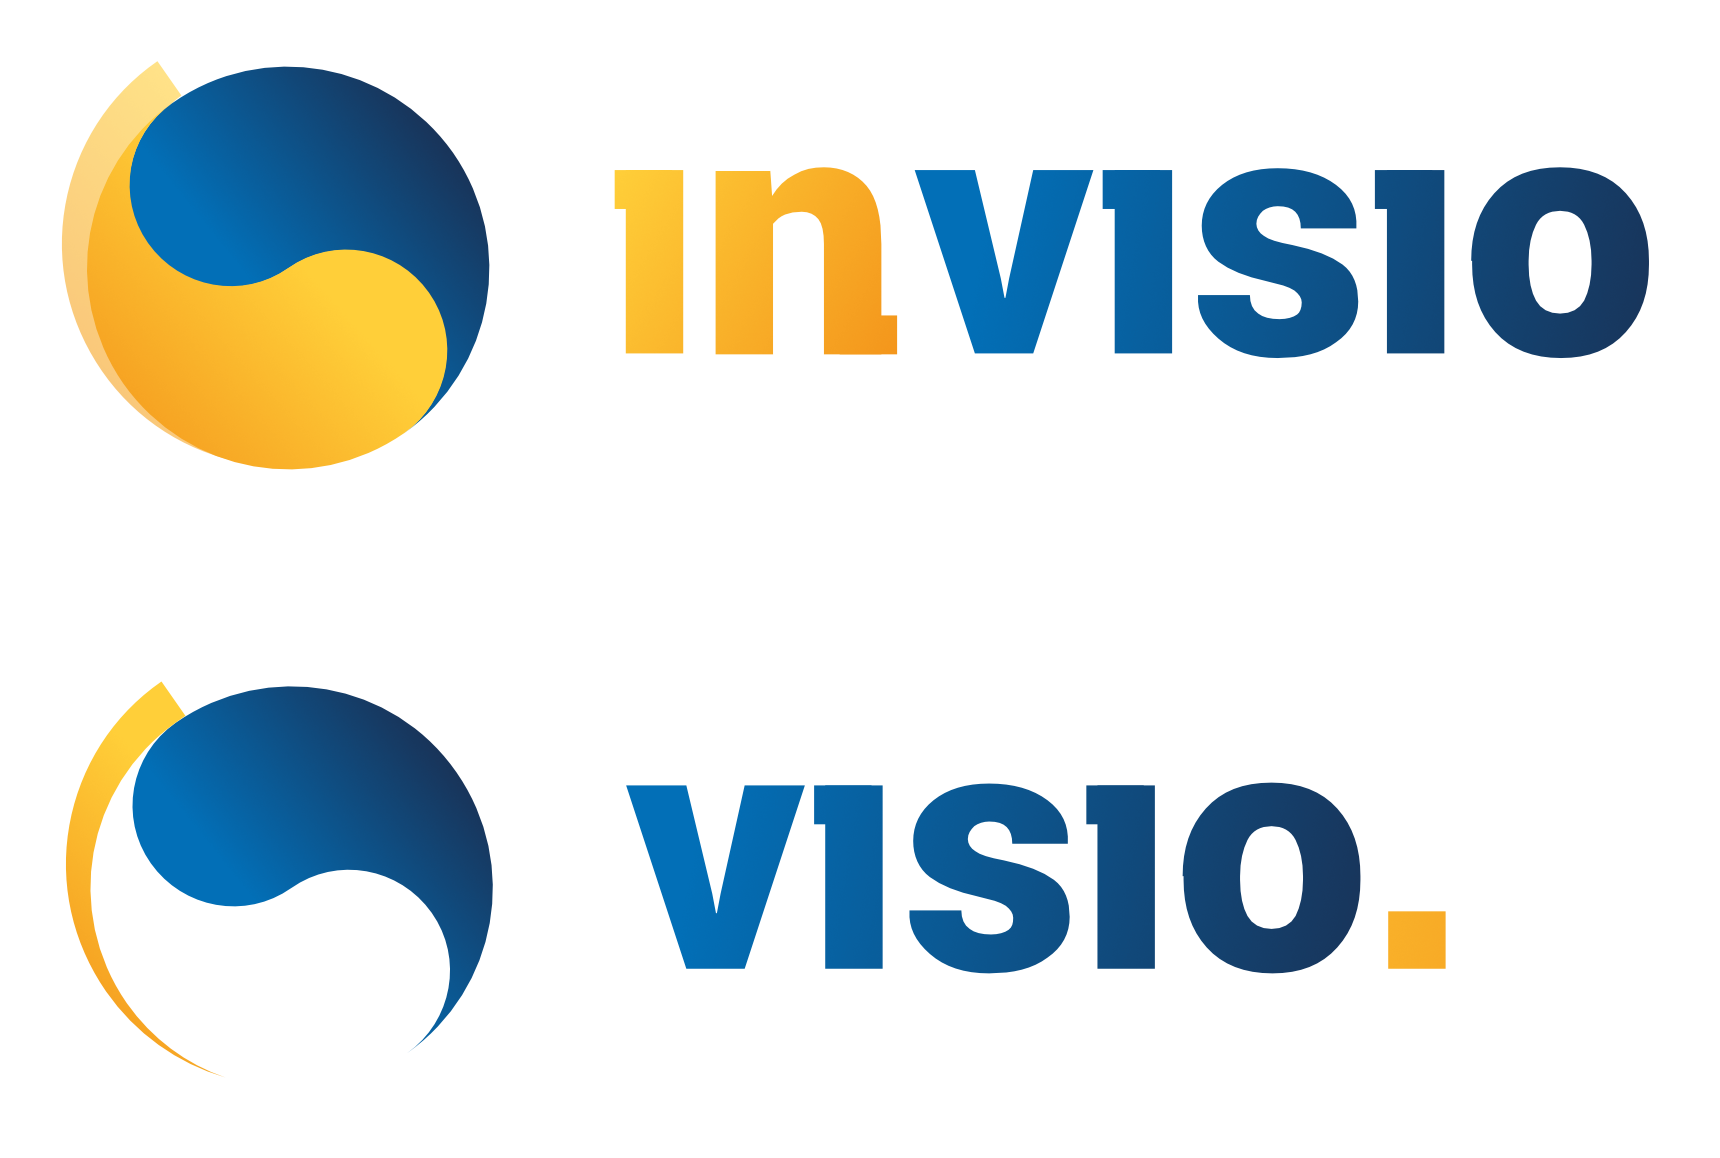 visio_new_logo-full-sheet.png